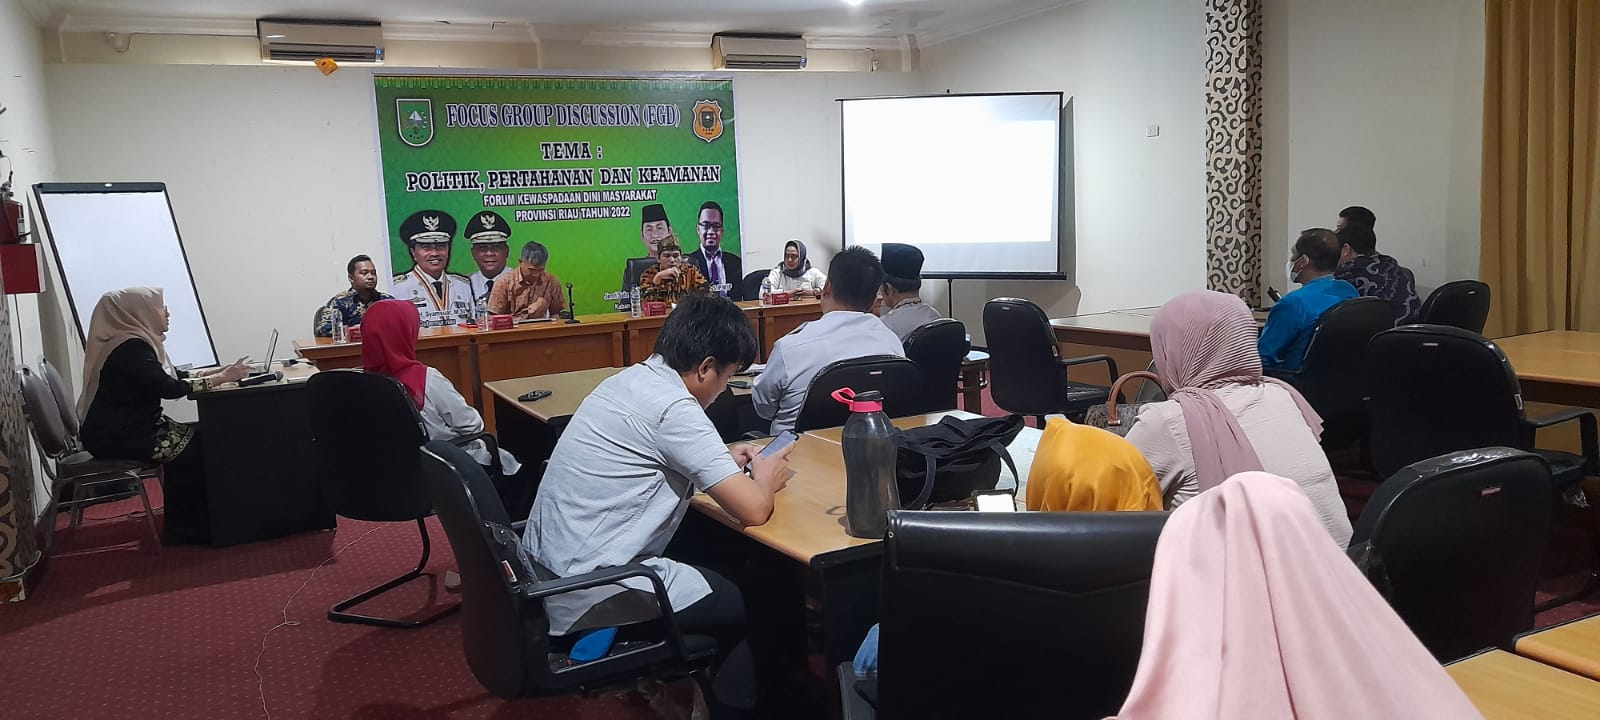 FKDM Riau Gelar Forum Diskusi Politik, Pertahanan dan Keamanan